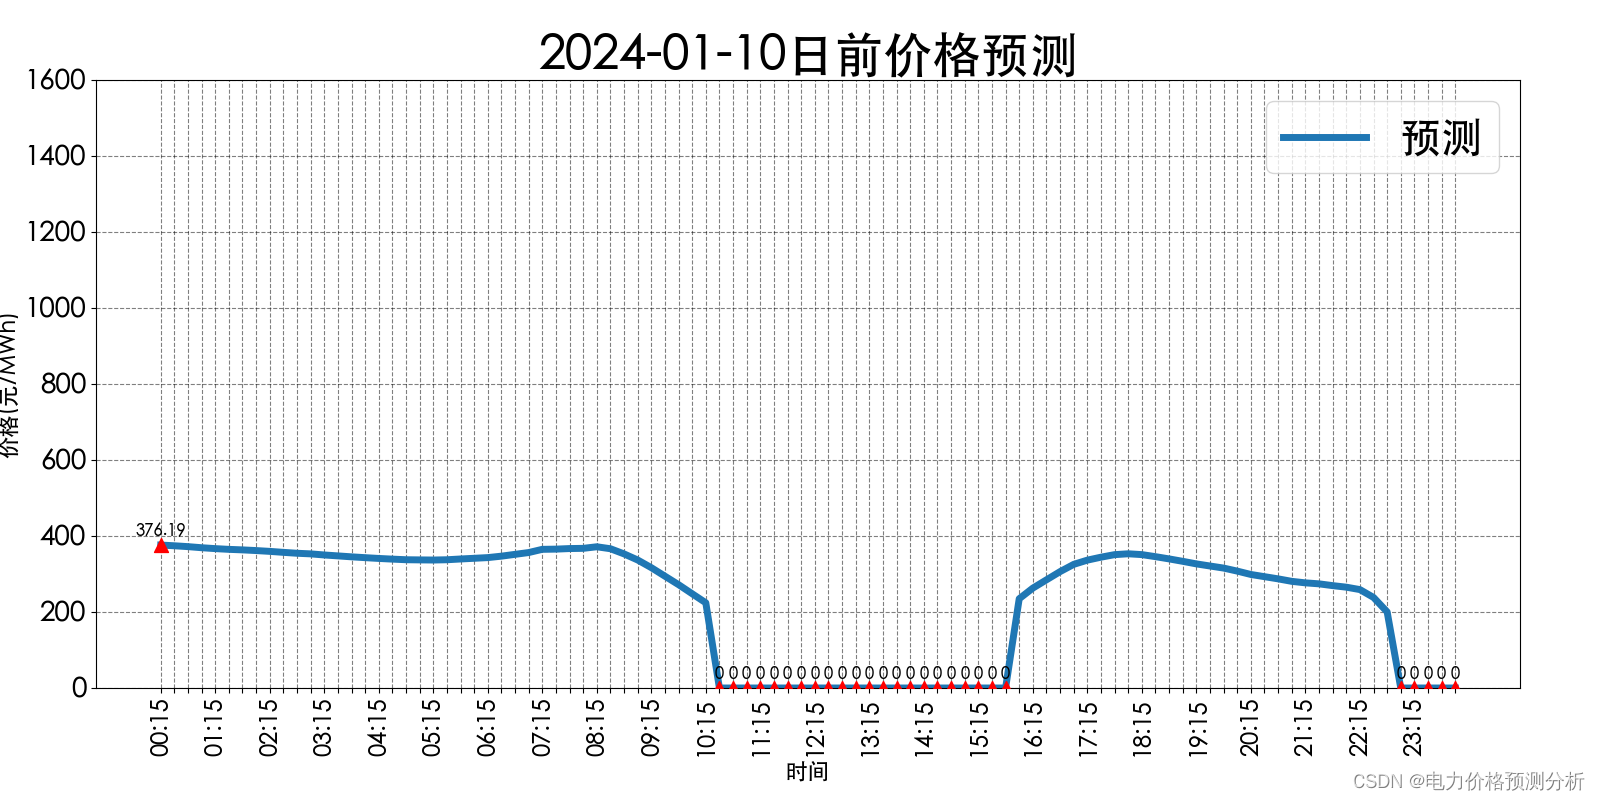 山西电力市场日前价格预测【2024-01-10】